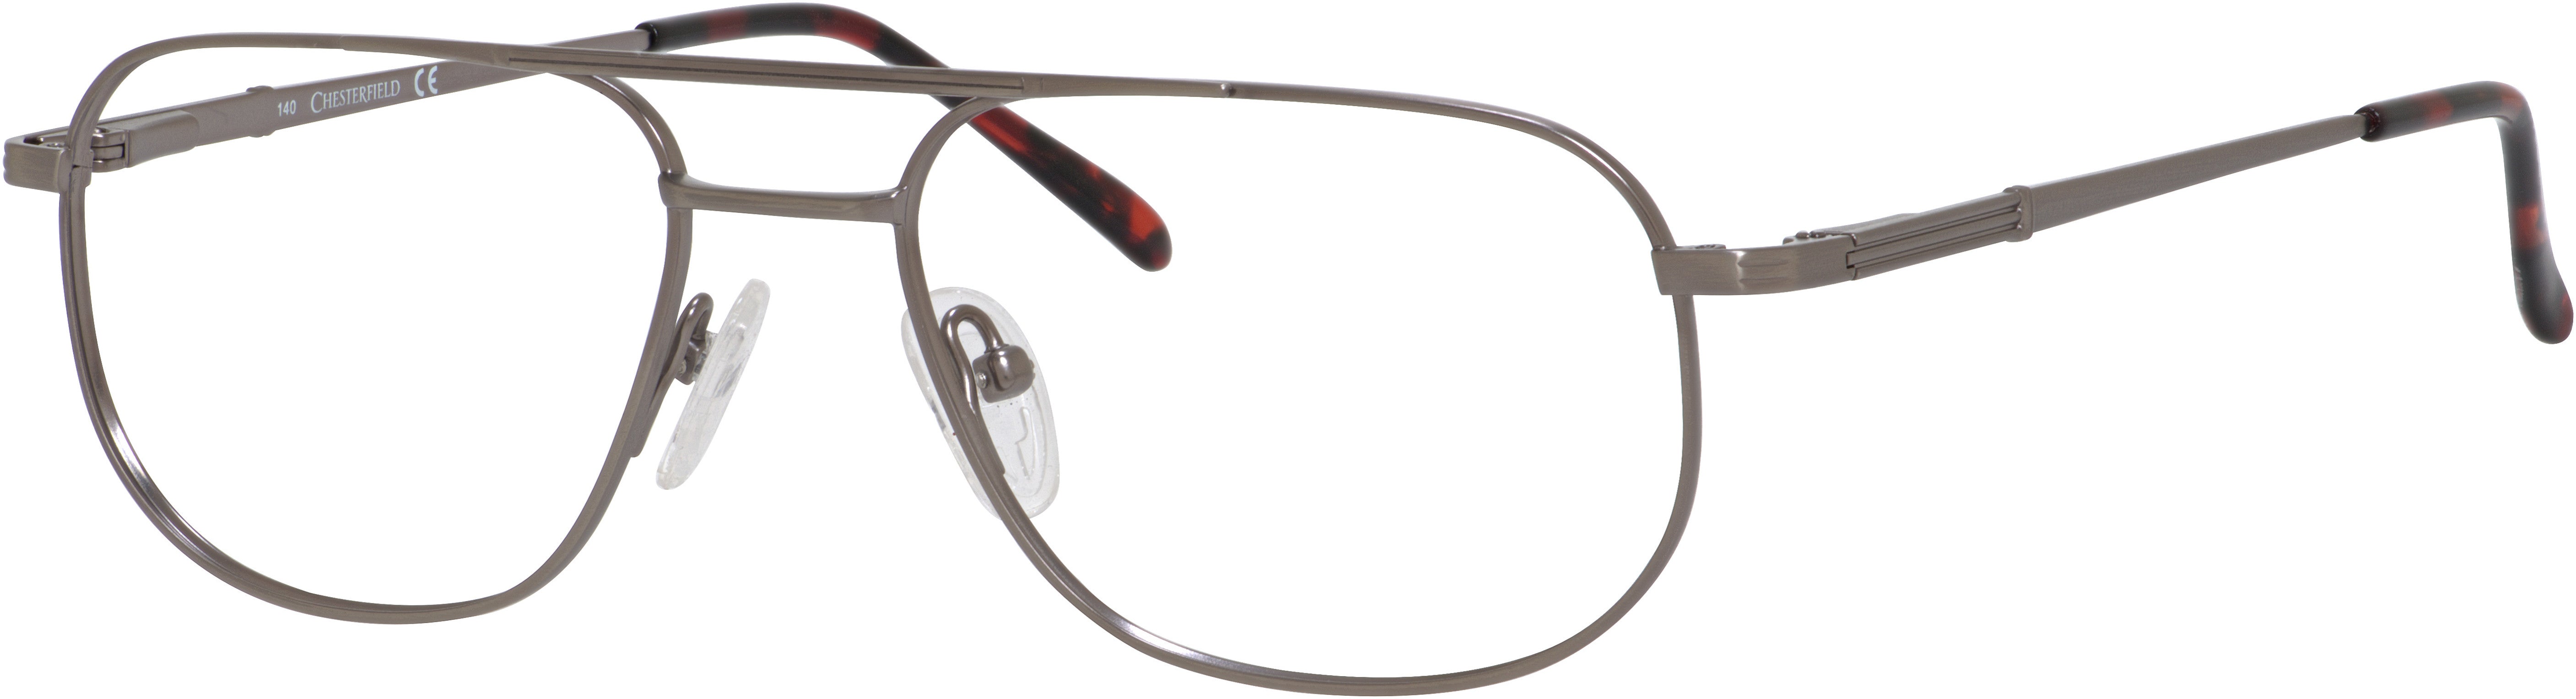  Chesterfield 352/T Rectangular Eyeglasses 06WK-06WK  Pewter (00 Demo Lens)